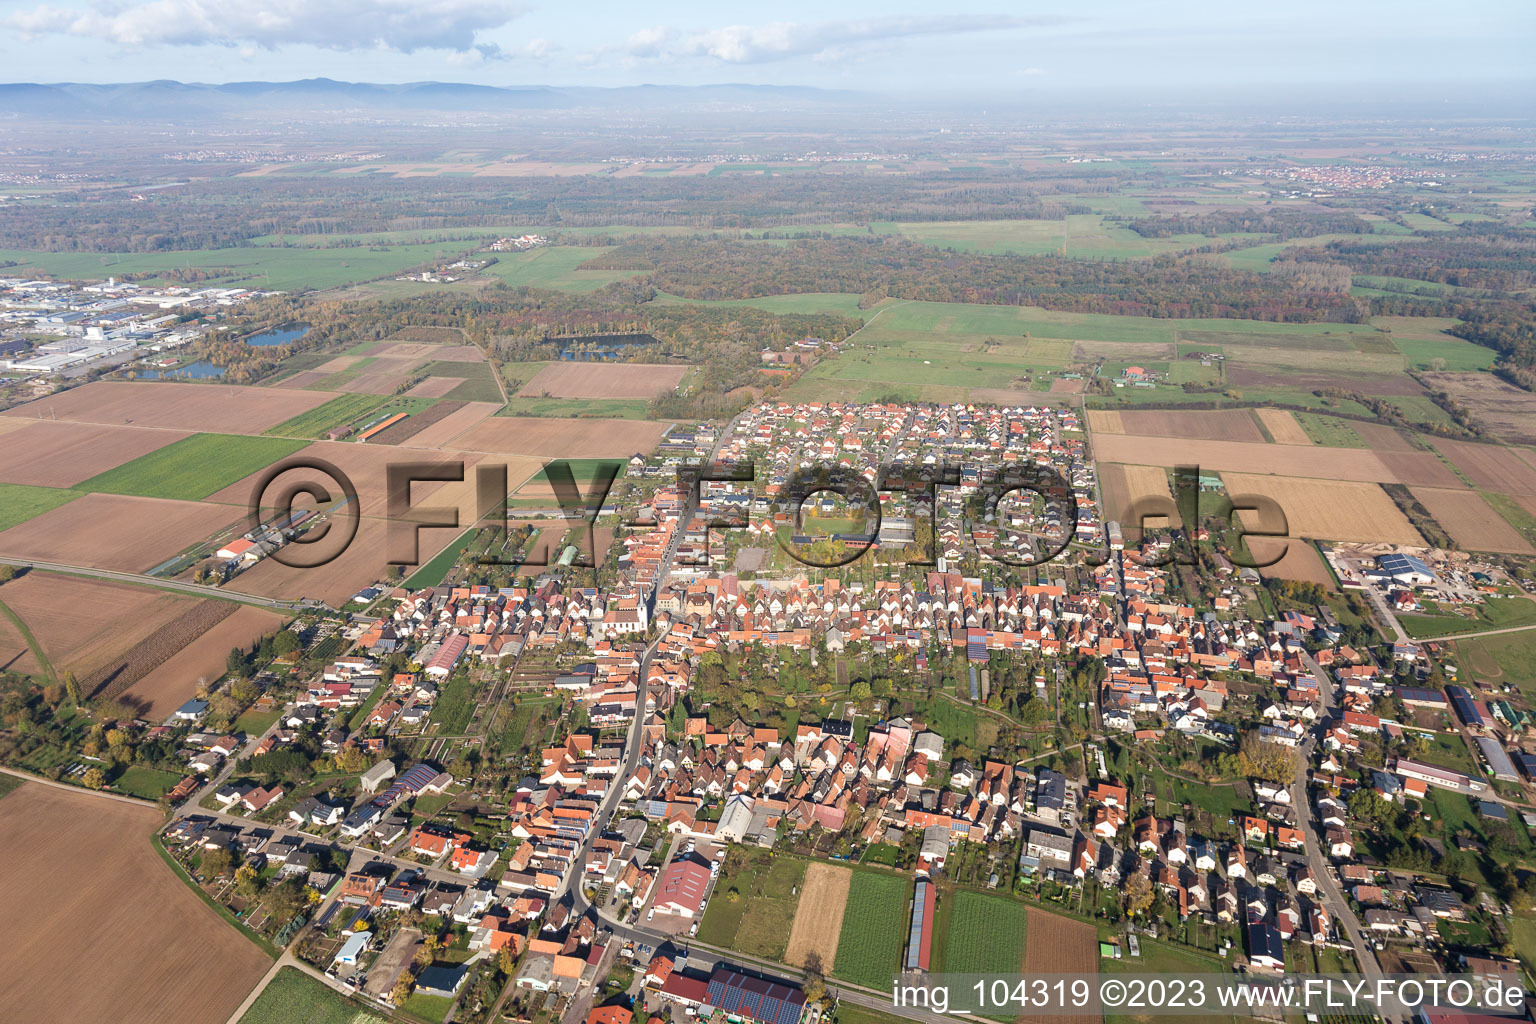 Luftbild von Ottersheim bei Landau im Bundesland Rheinland-Pfalz, Deutschland